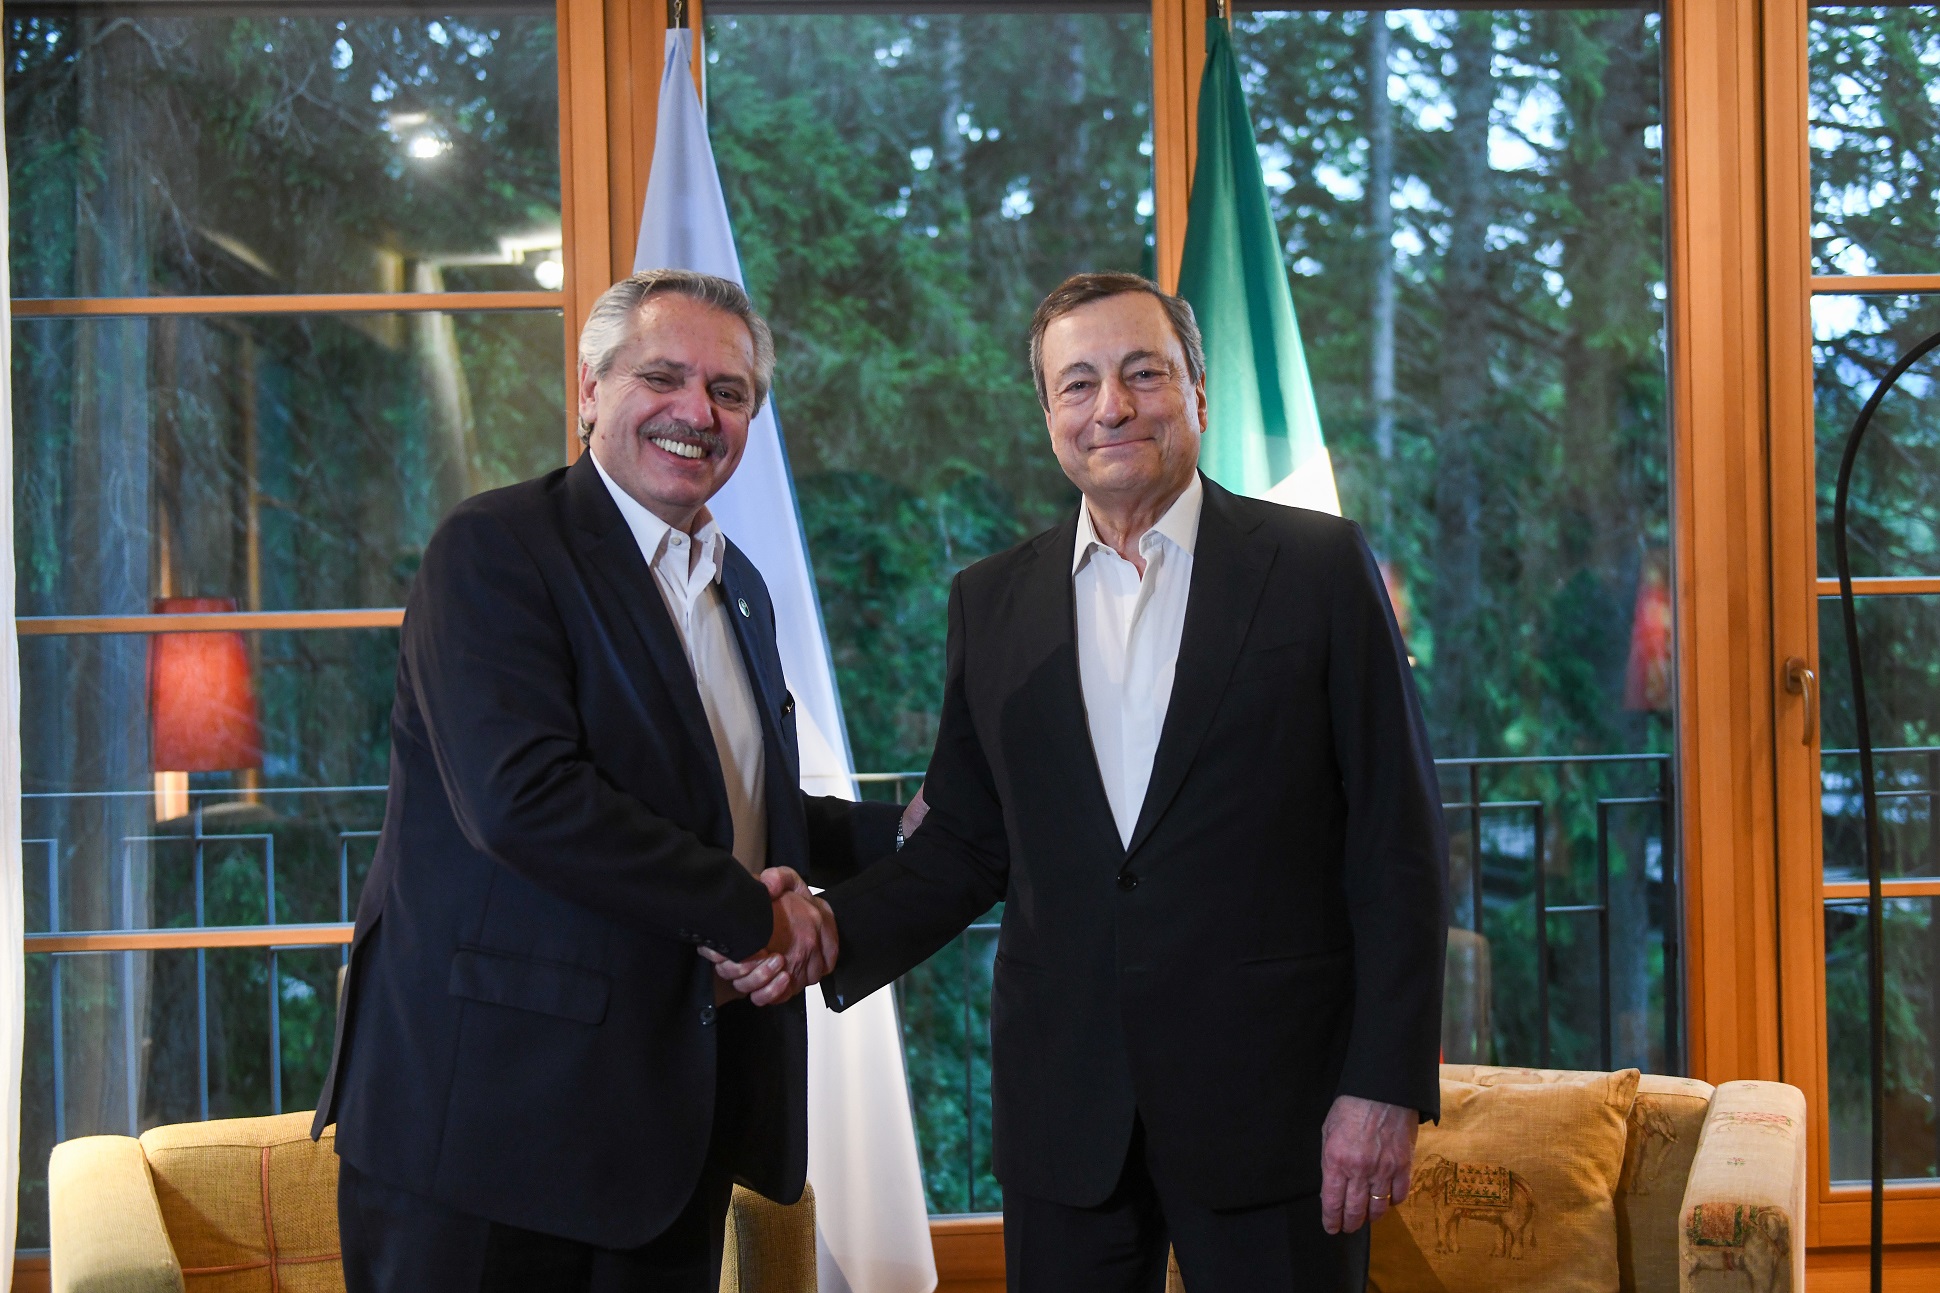 Alberto Fernández se reunió con el presidente del Consejo de Ministros de Italia, Mario Draghi